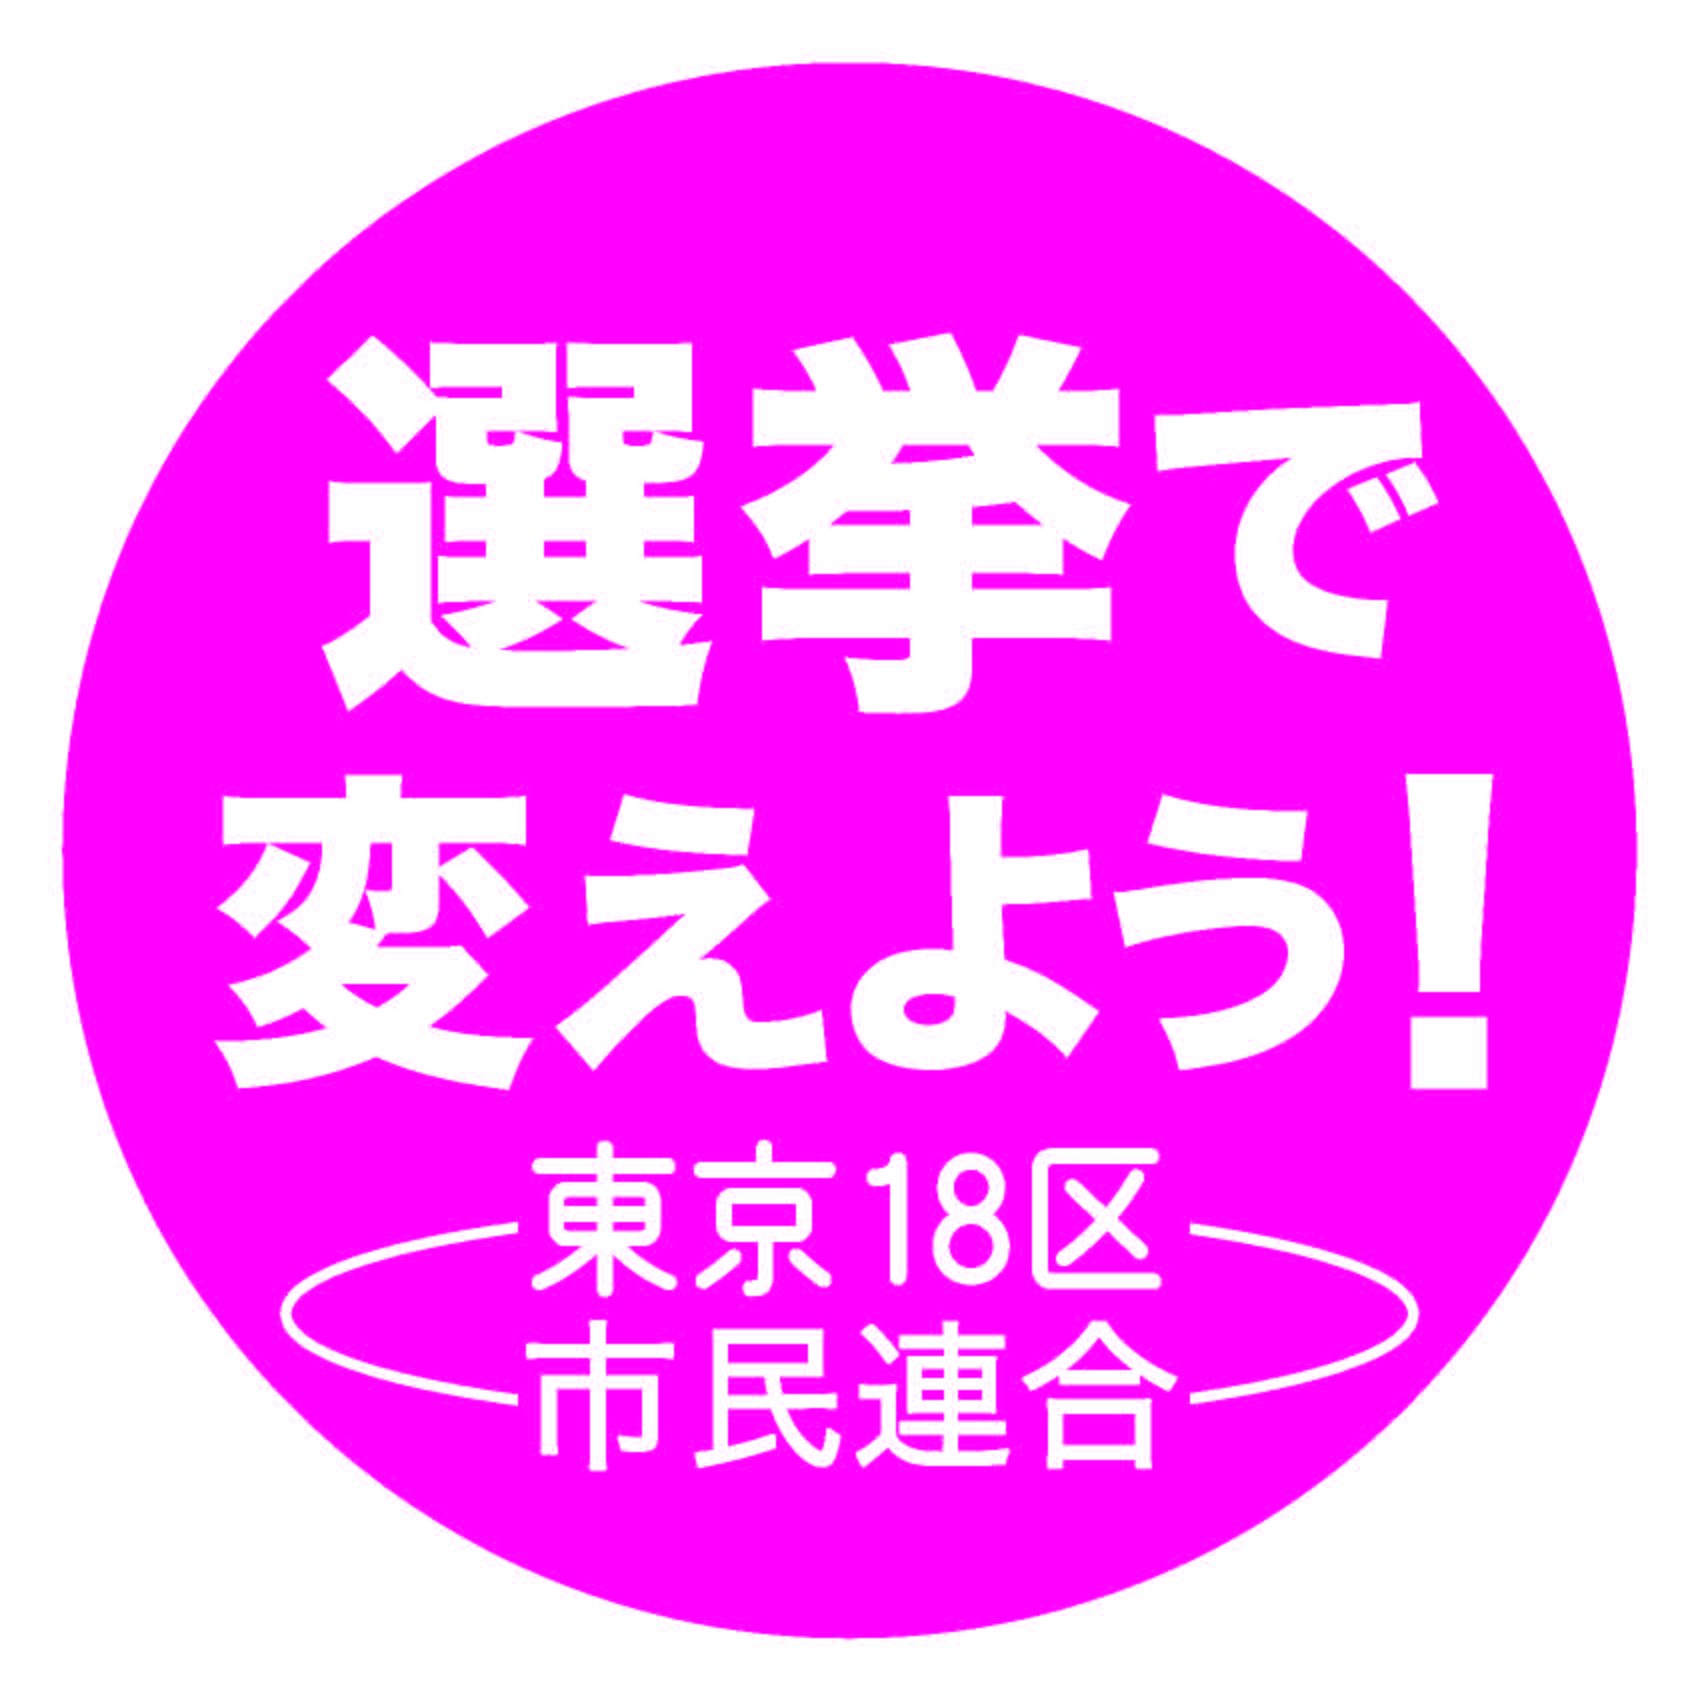 衆院選東京第18区の三市の市民によるグループです。